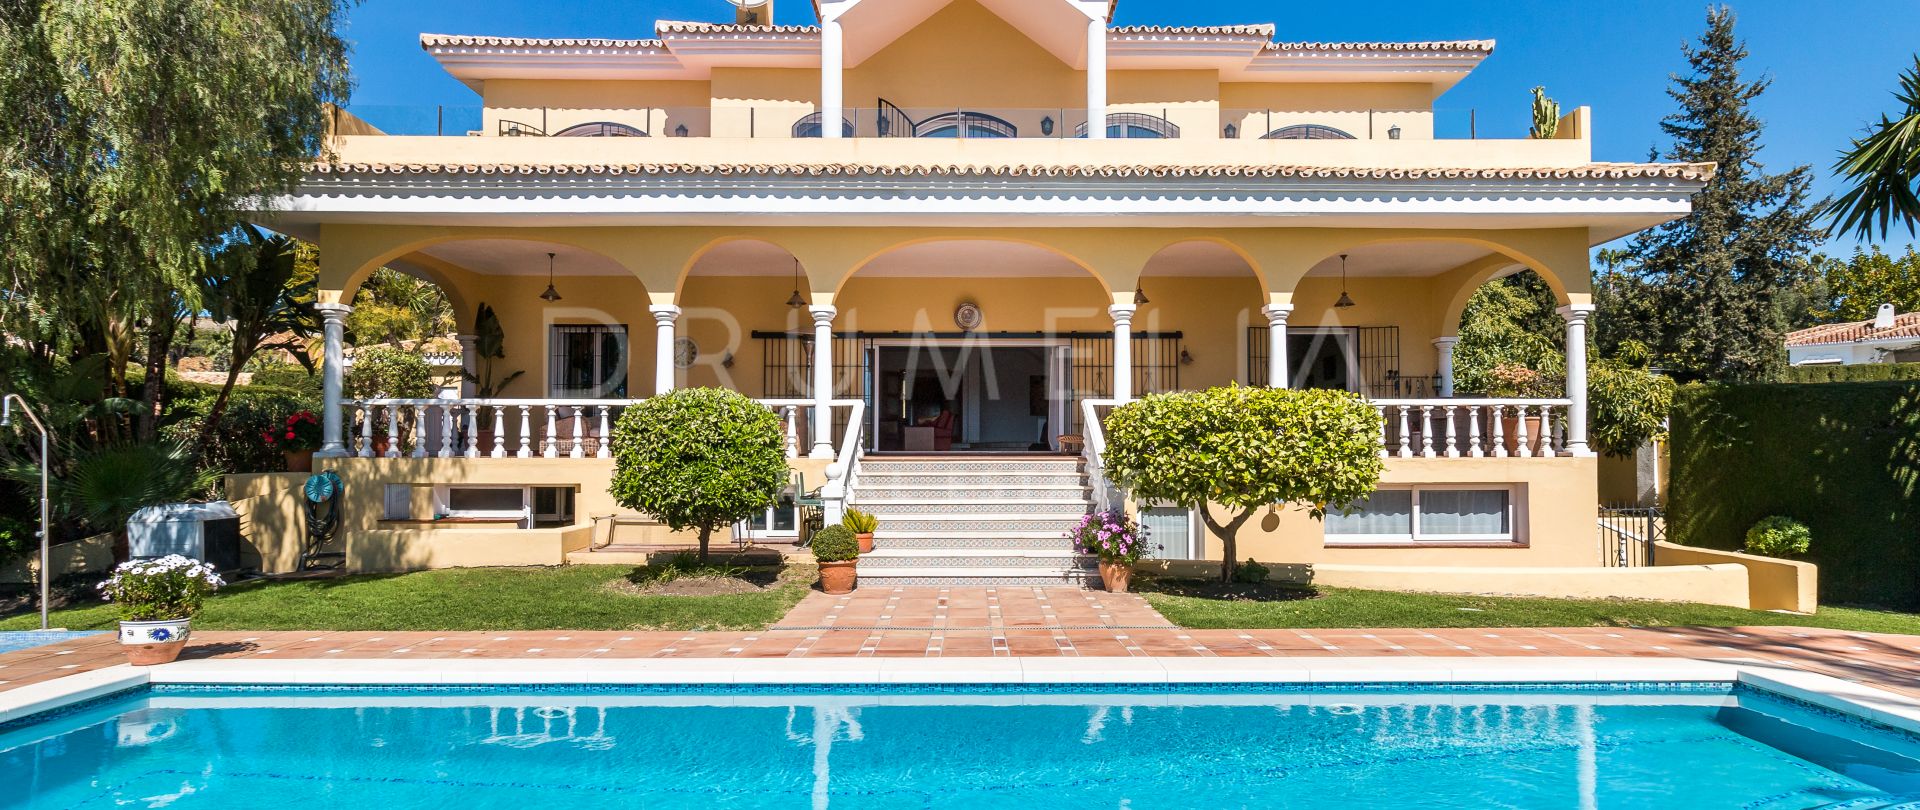 Elegante luxe mediterrane villa, Paraiso Alto, Benahavis